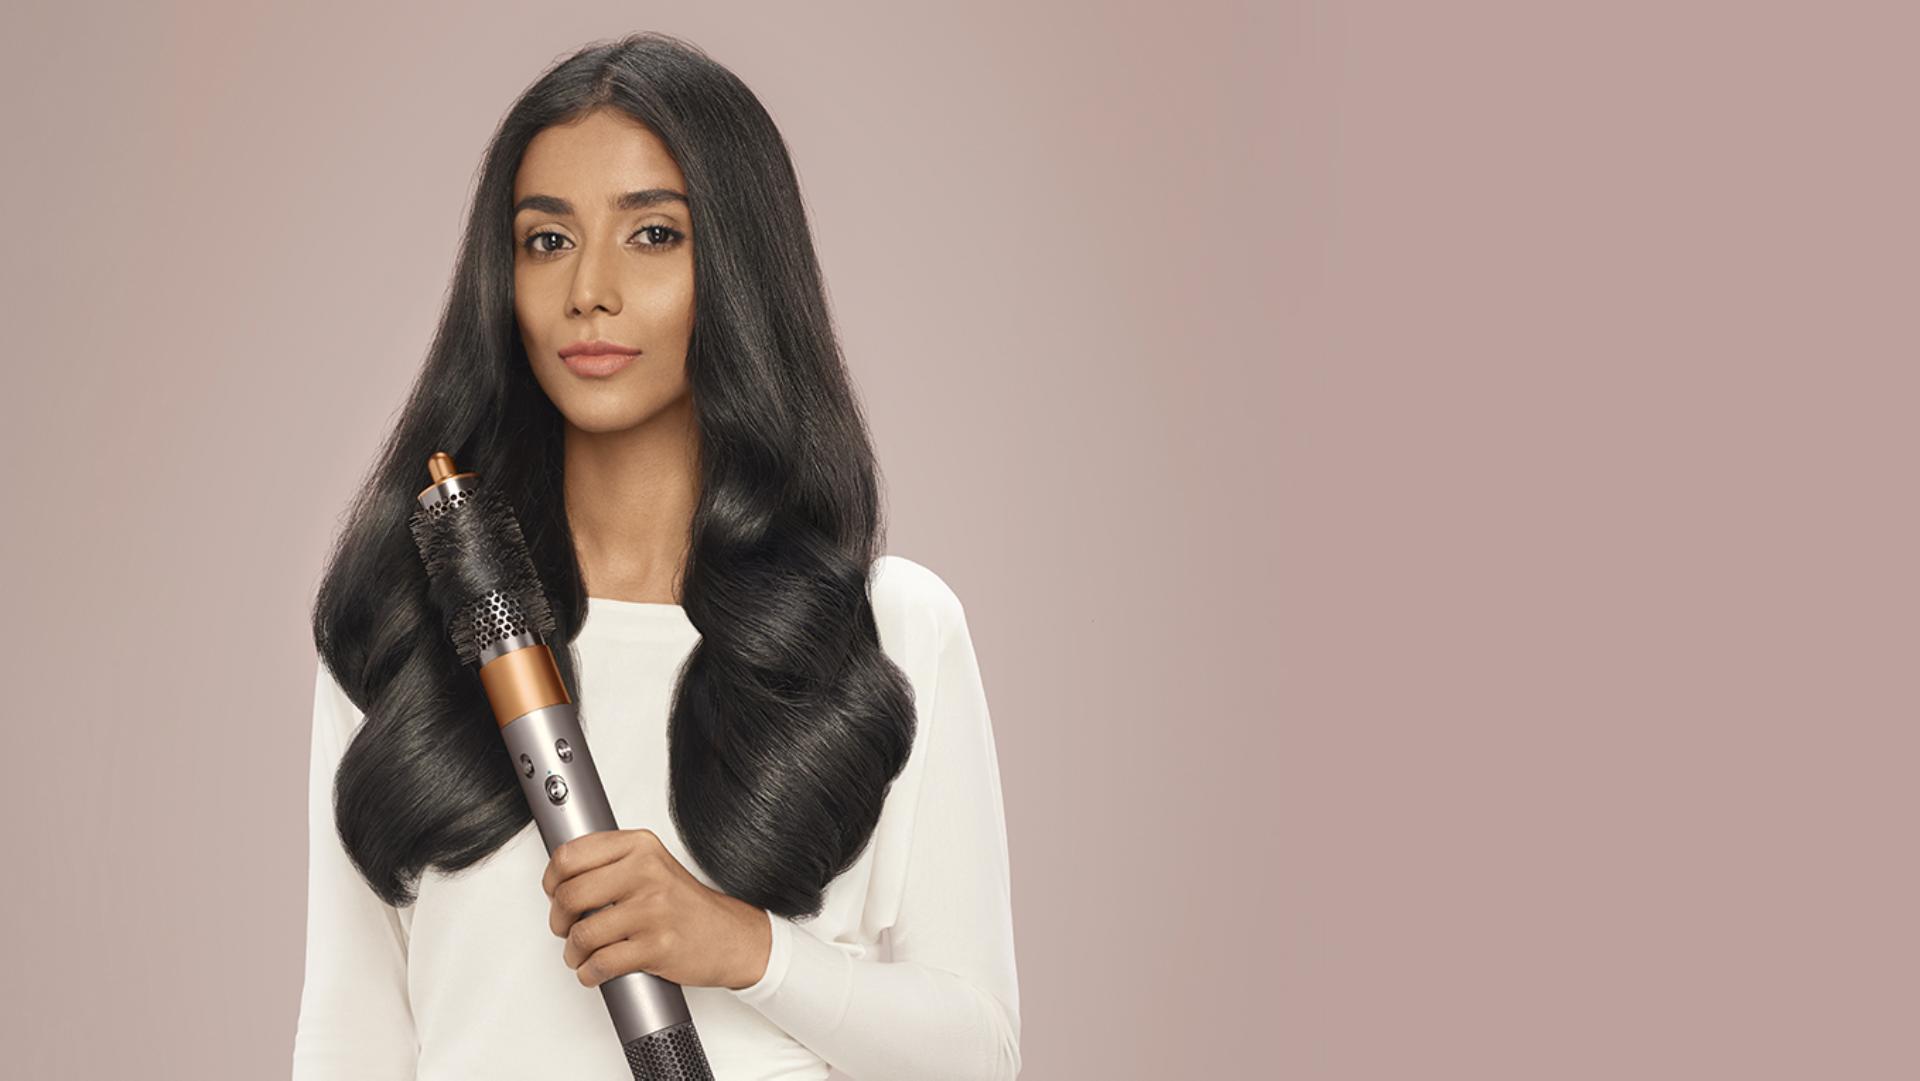 Hair styler | Dyson Airwrap™ | Hair curler for women | Dyson India